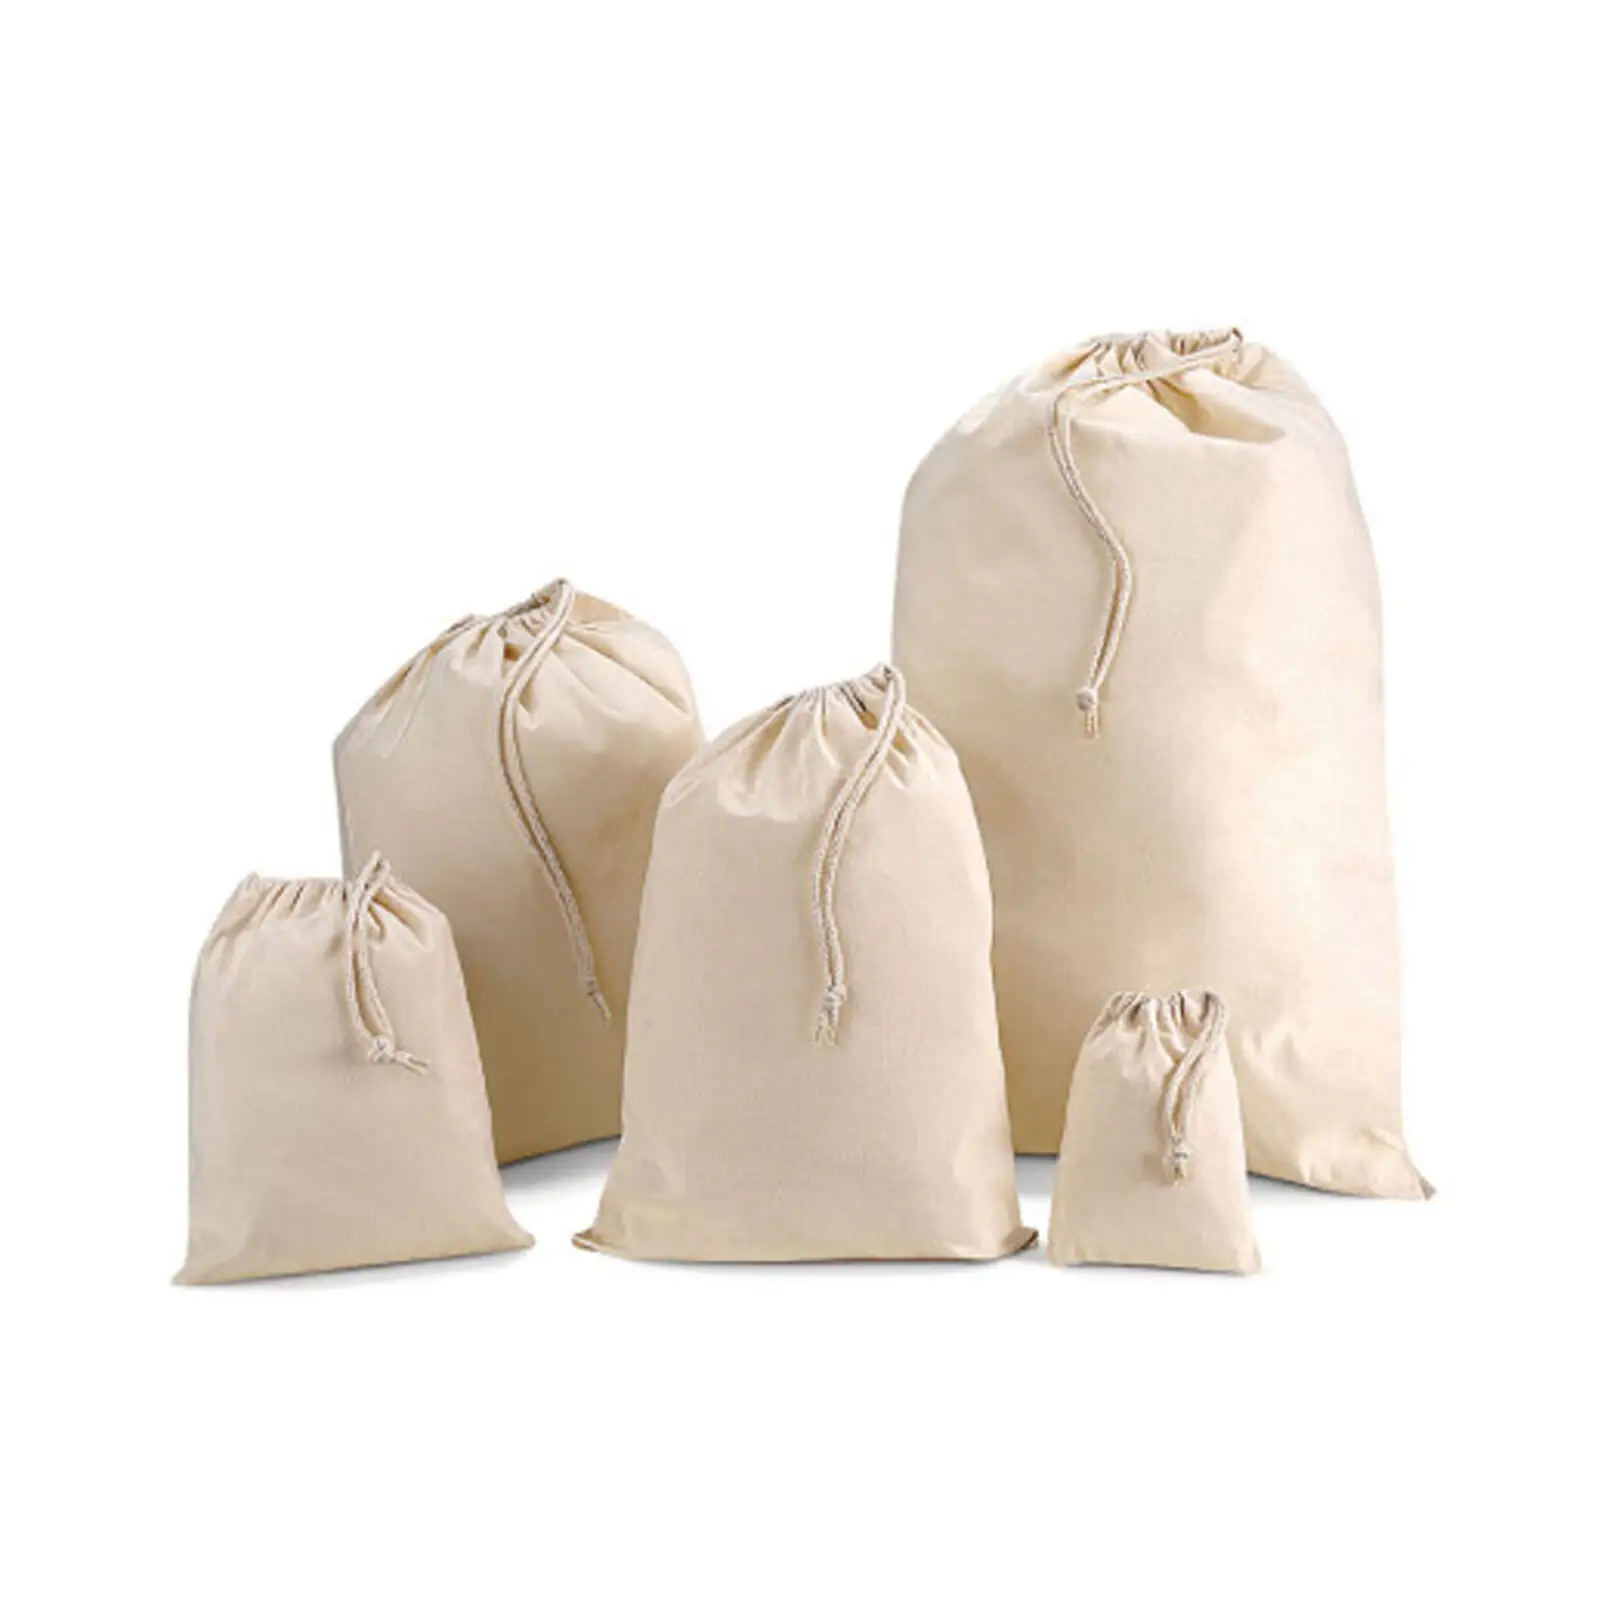 KAISEN再利用可能な農産物バッグモスリンショッピングストレージ100% 天然綿洗える生分解性巾着袋